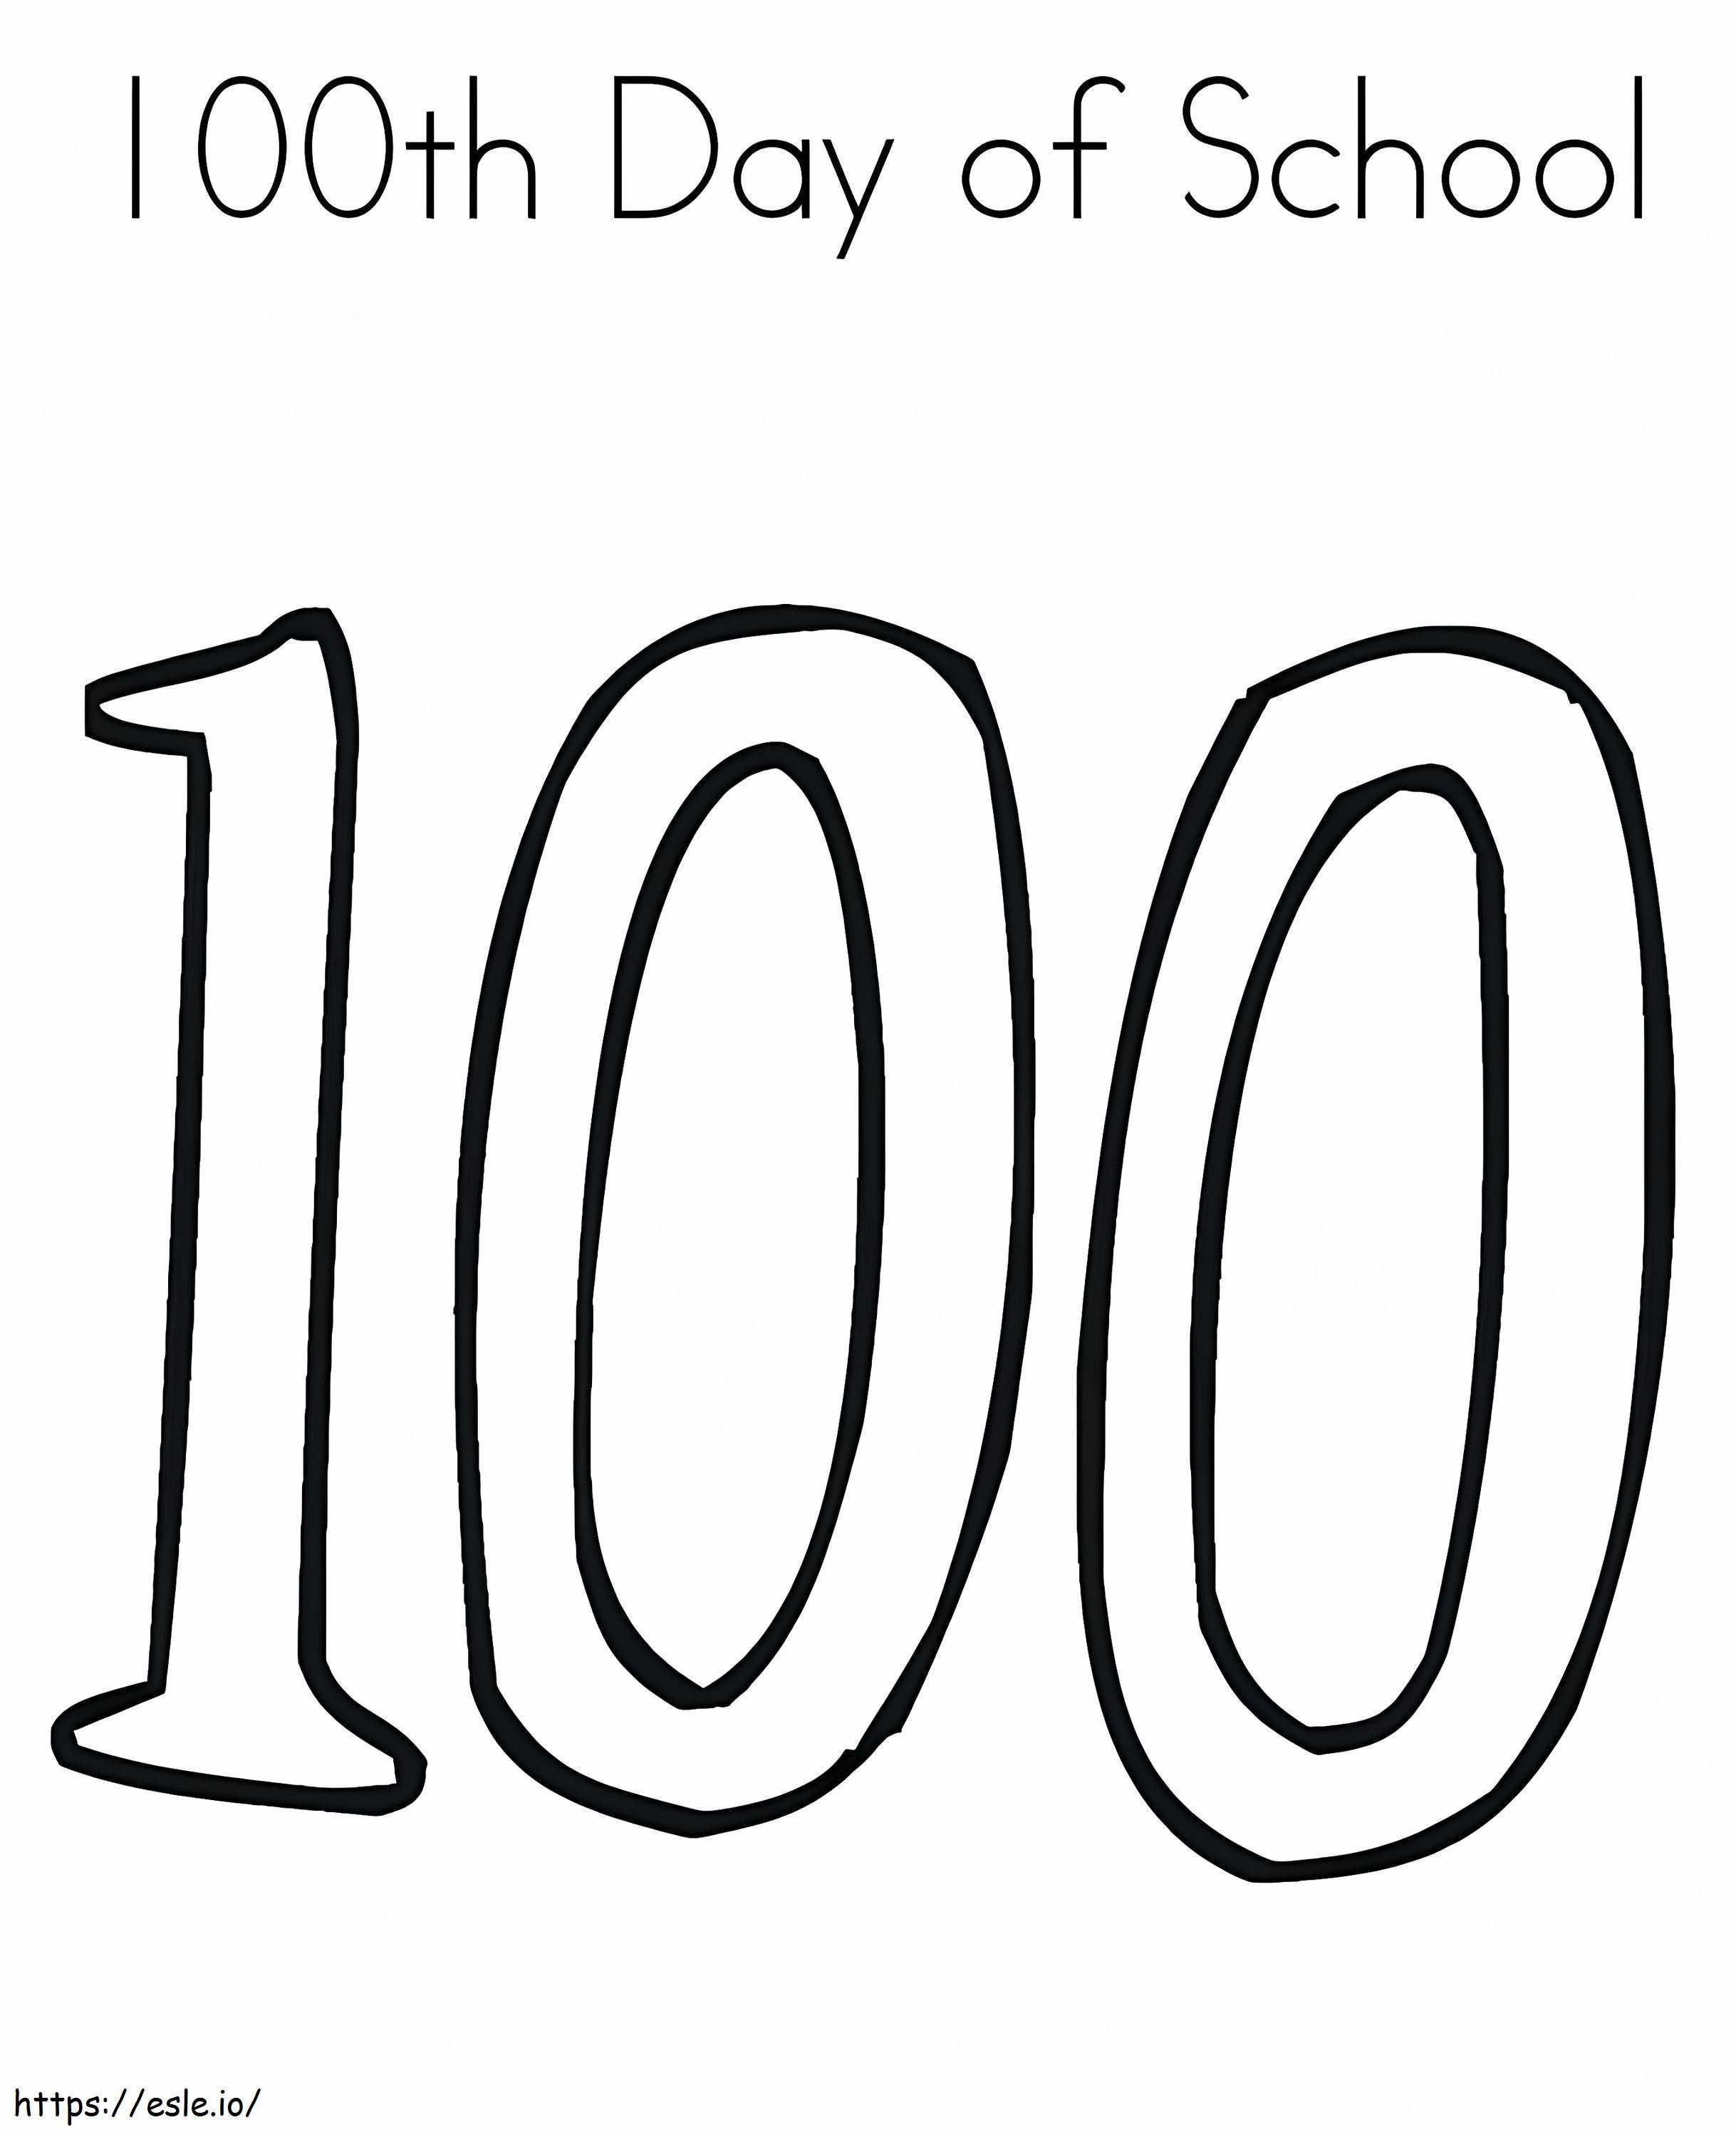 Łatwy 100-ty dzień szkoły kolorowanka